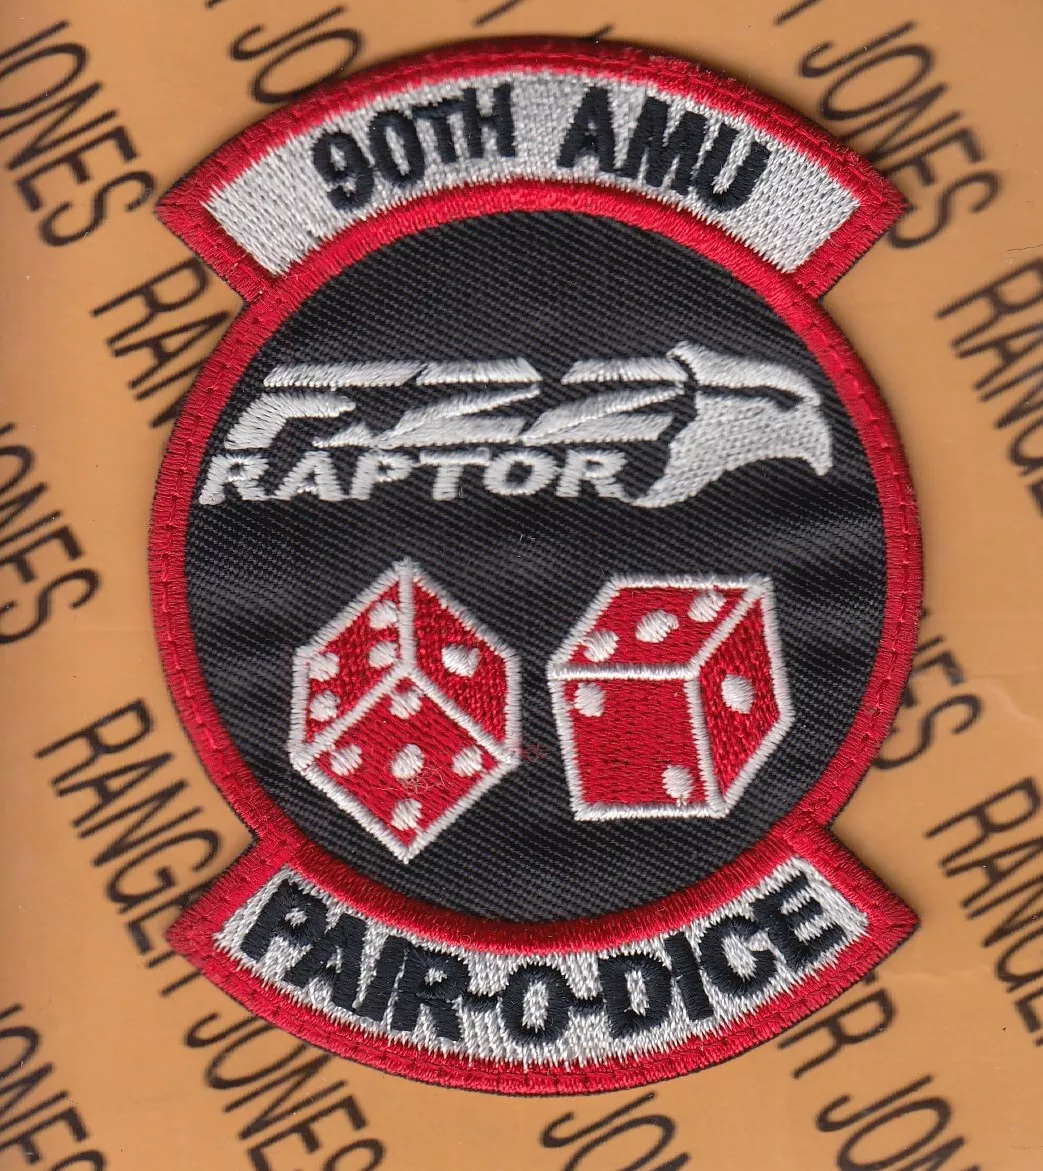 USAF Air Force 90th AMU Fighter Sq PAIR O DICE RAPTOR 3.75 patch c/e